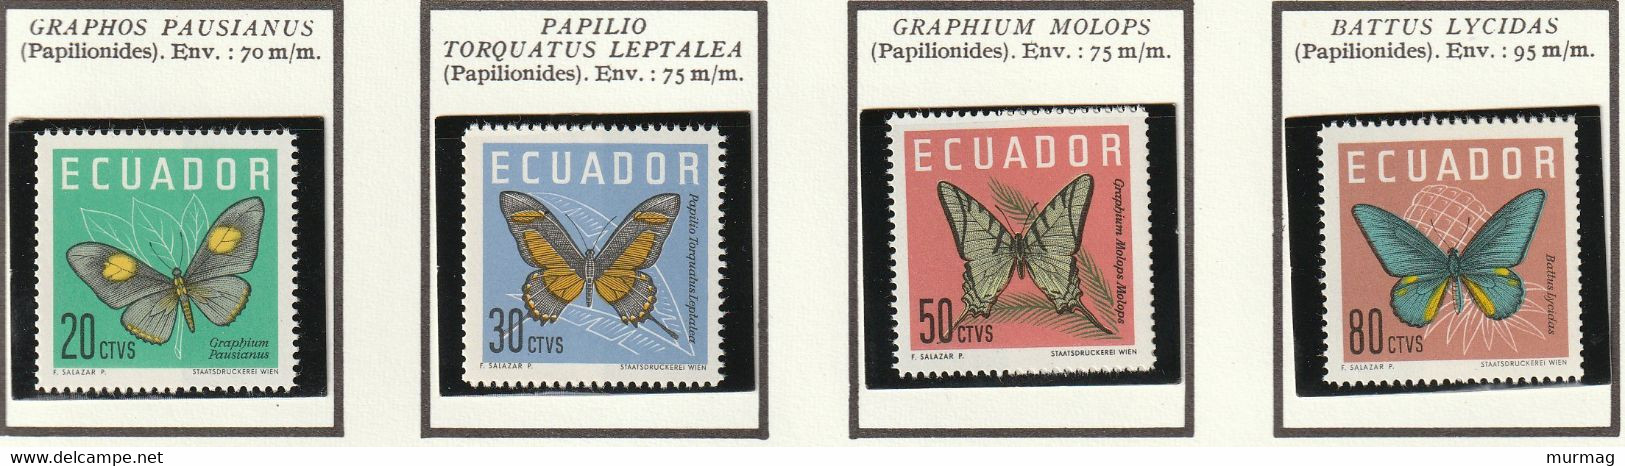 EQUATEUR - Faune, Papillons - 1964 - MNH - Ecuador